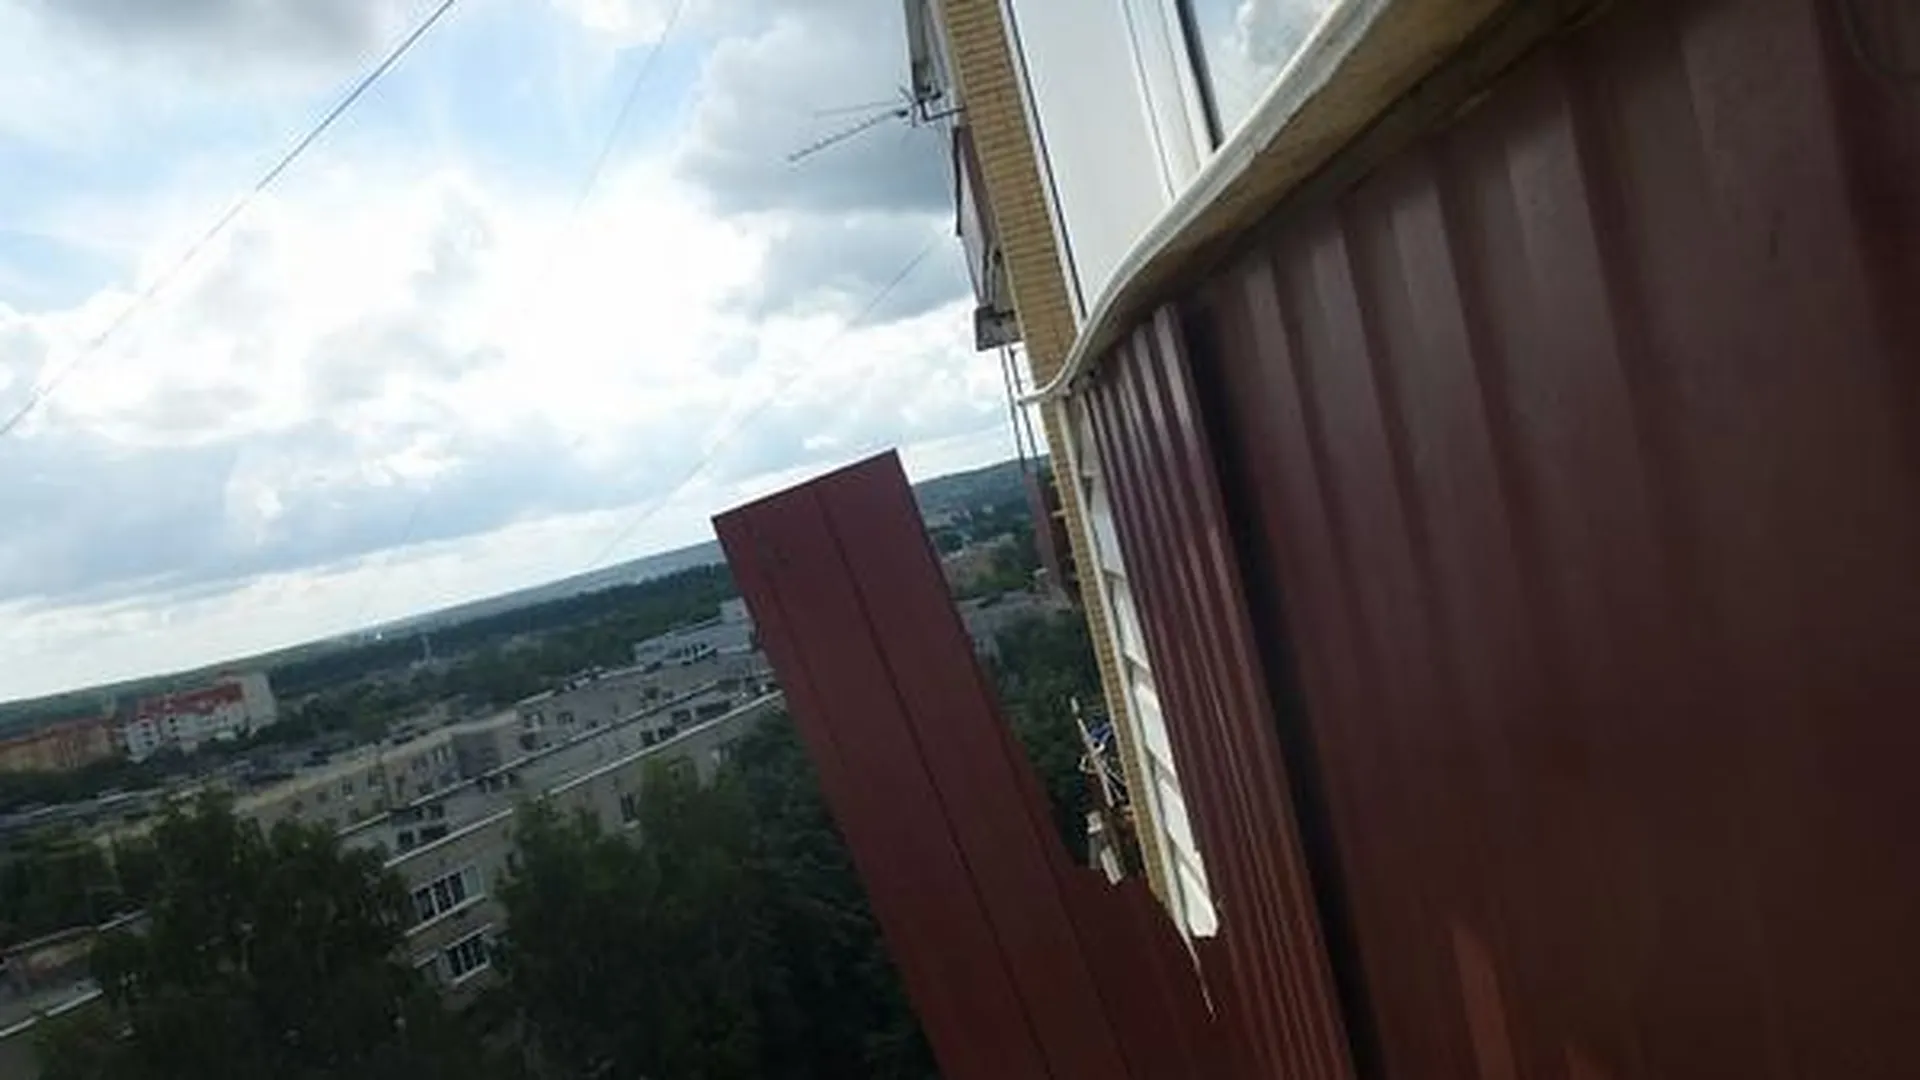 УК в Истре оштрафовали на 250 тыс за опасный балкон